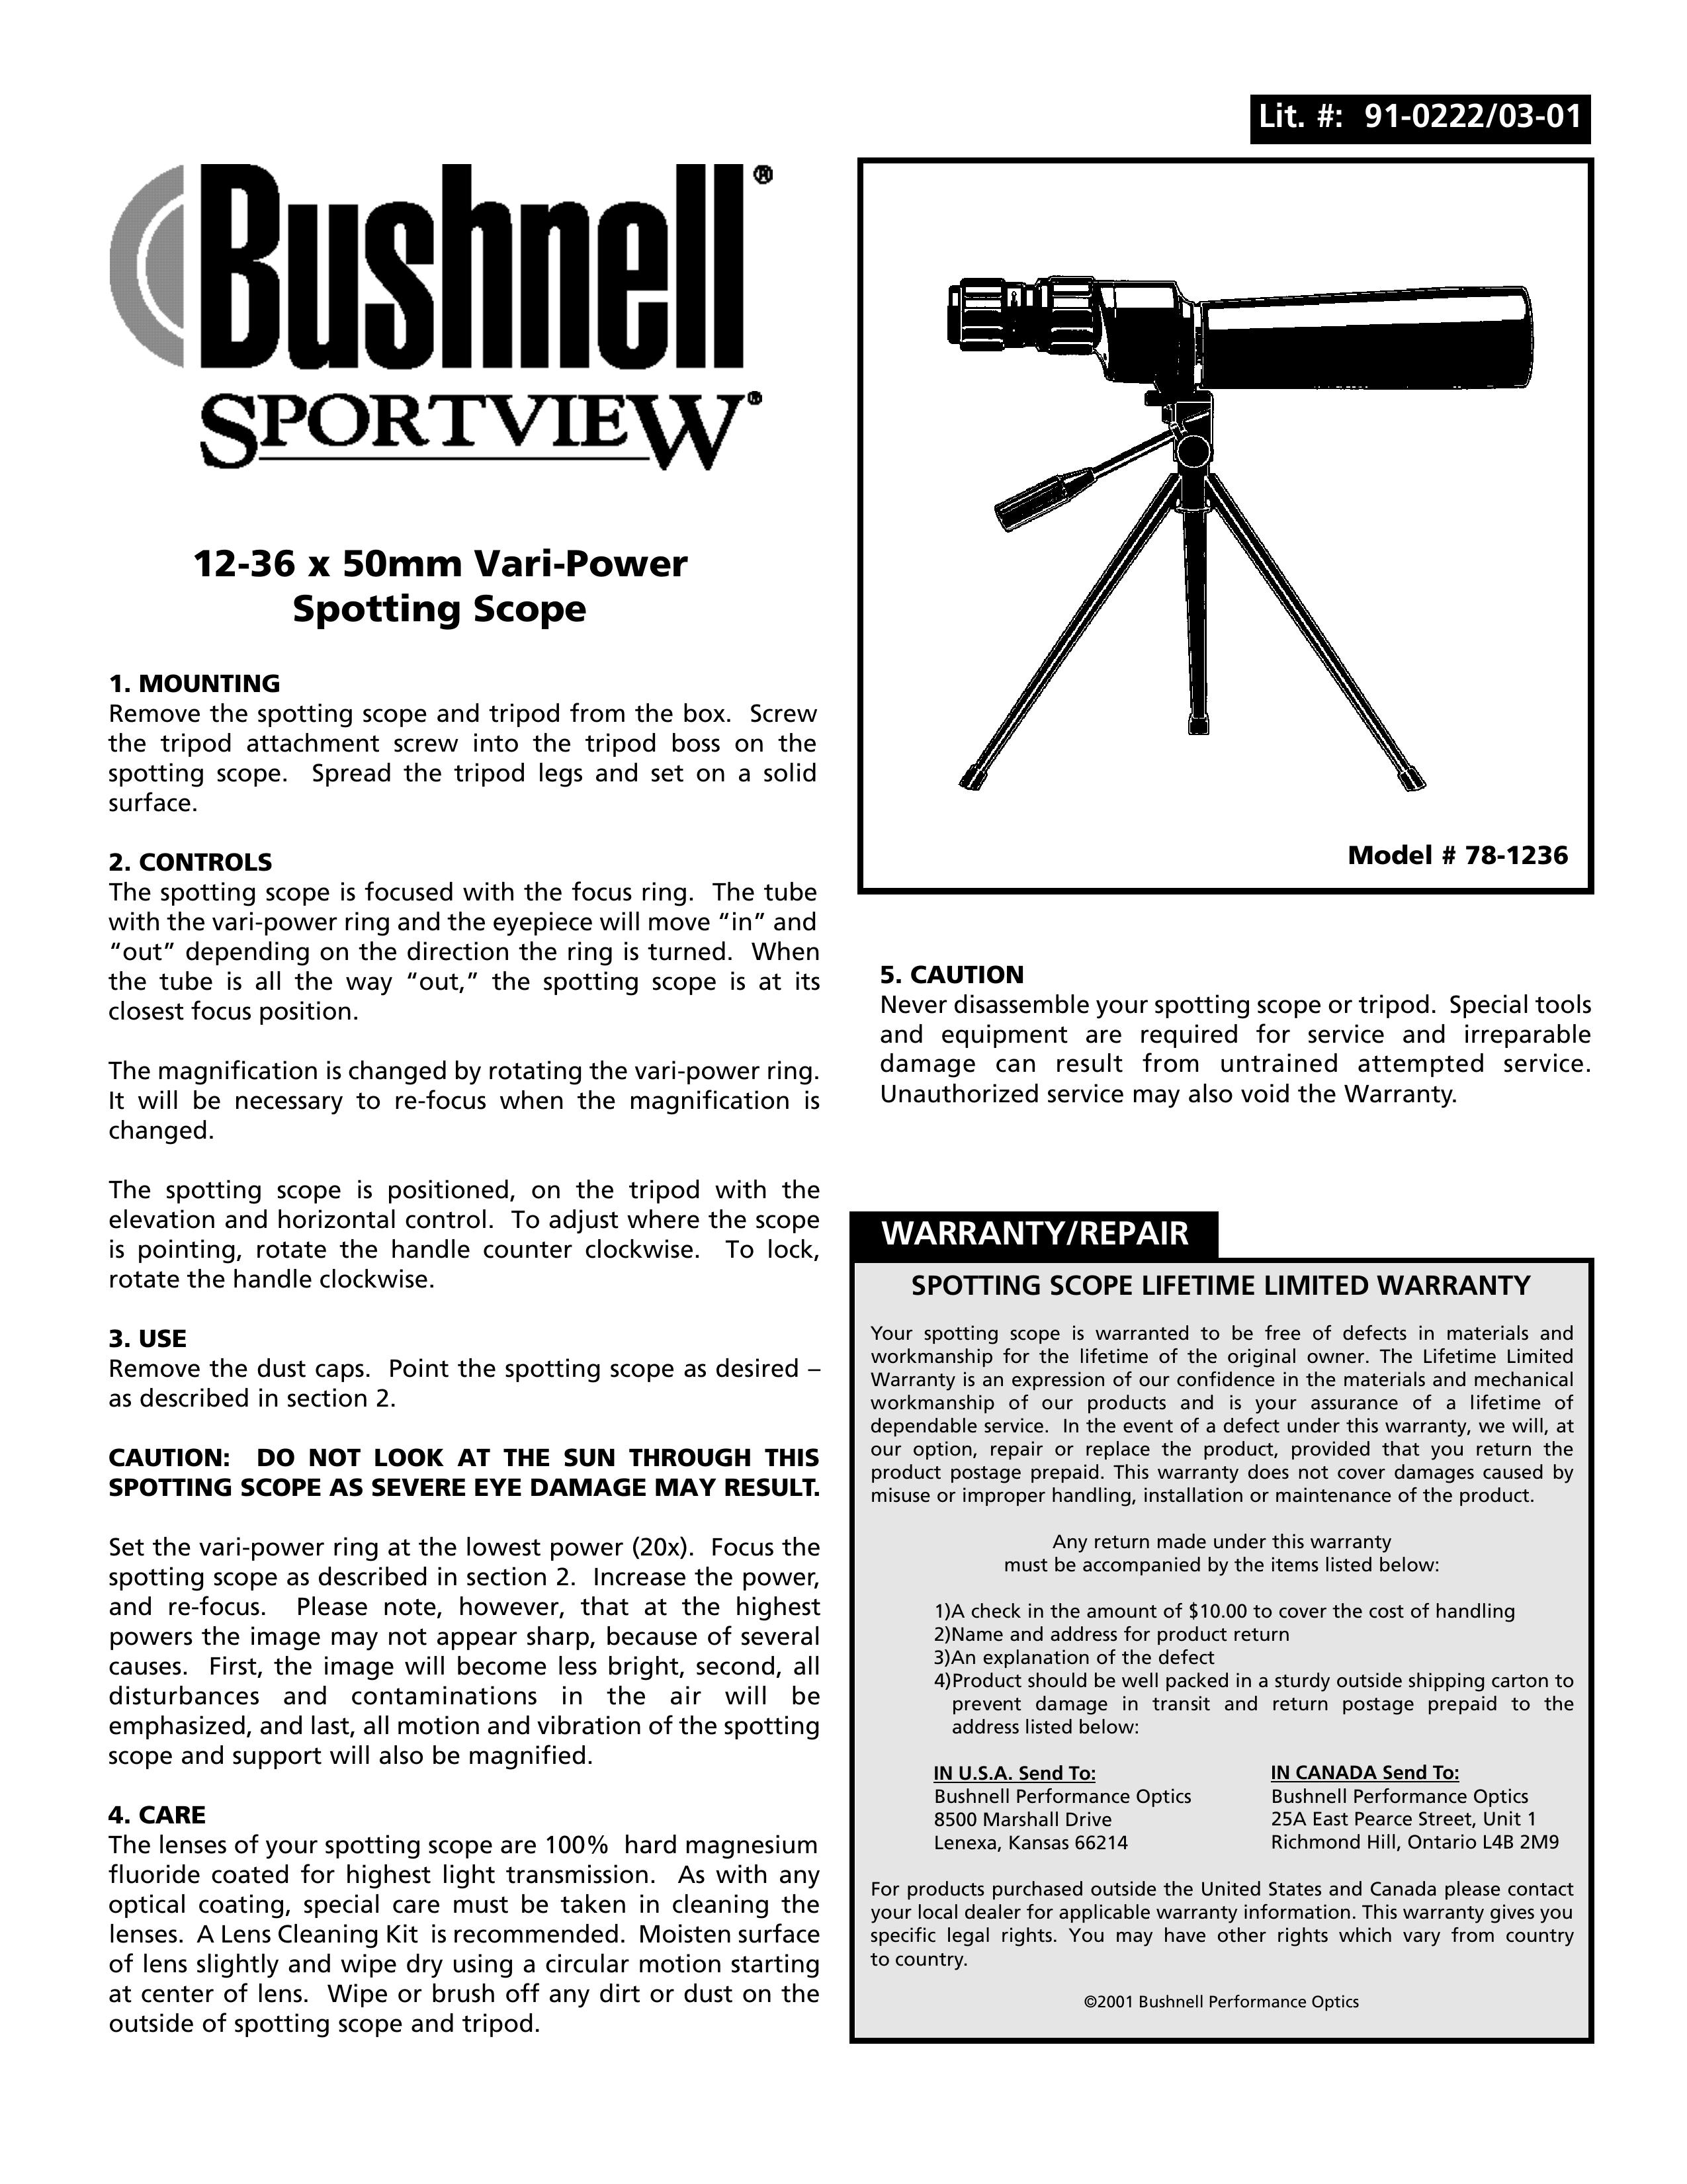 Bushnell 78-1236 Telescope User Manual